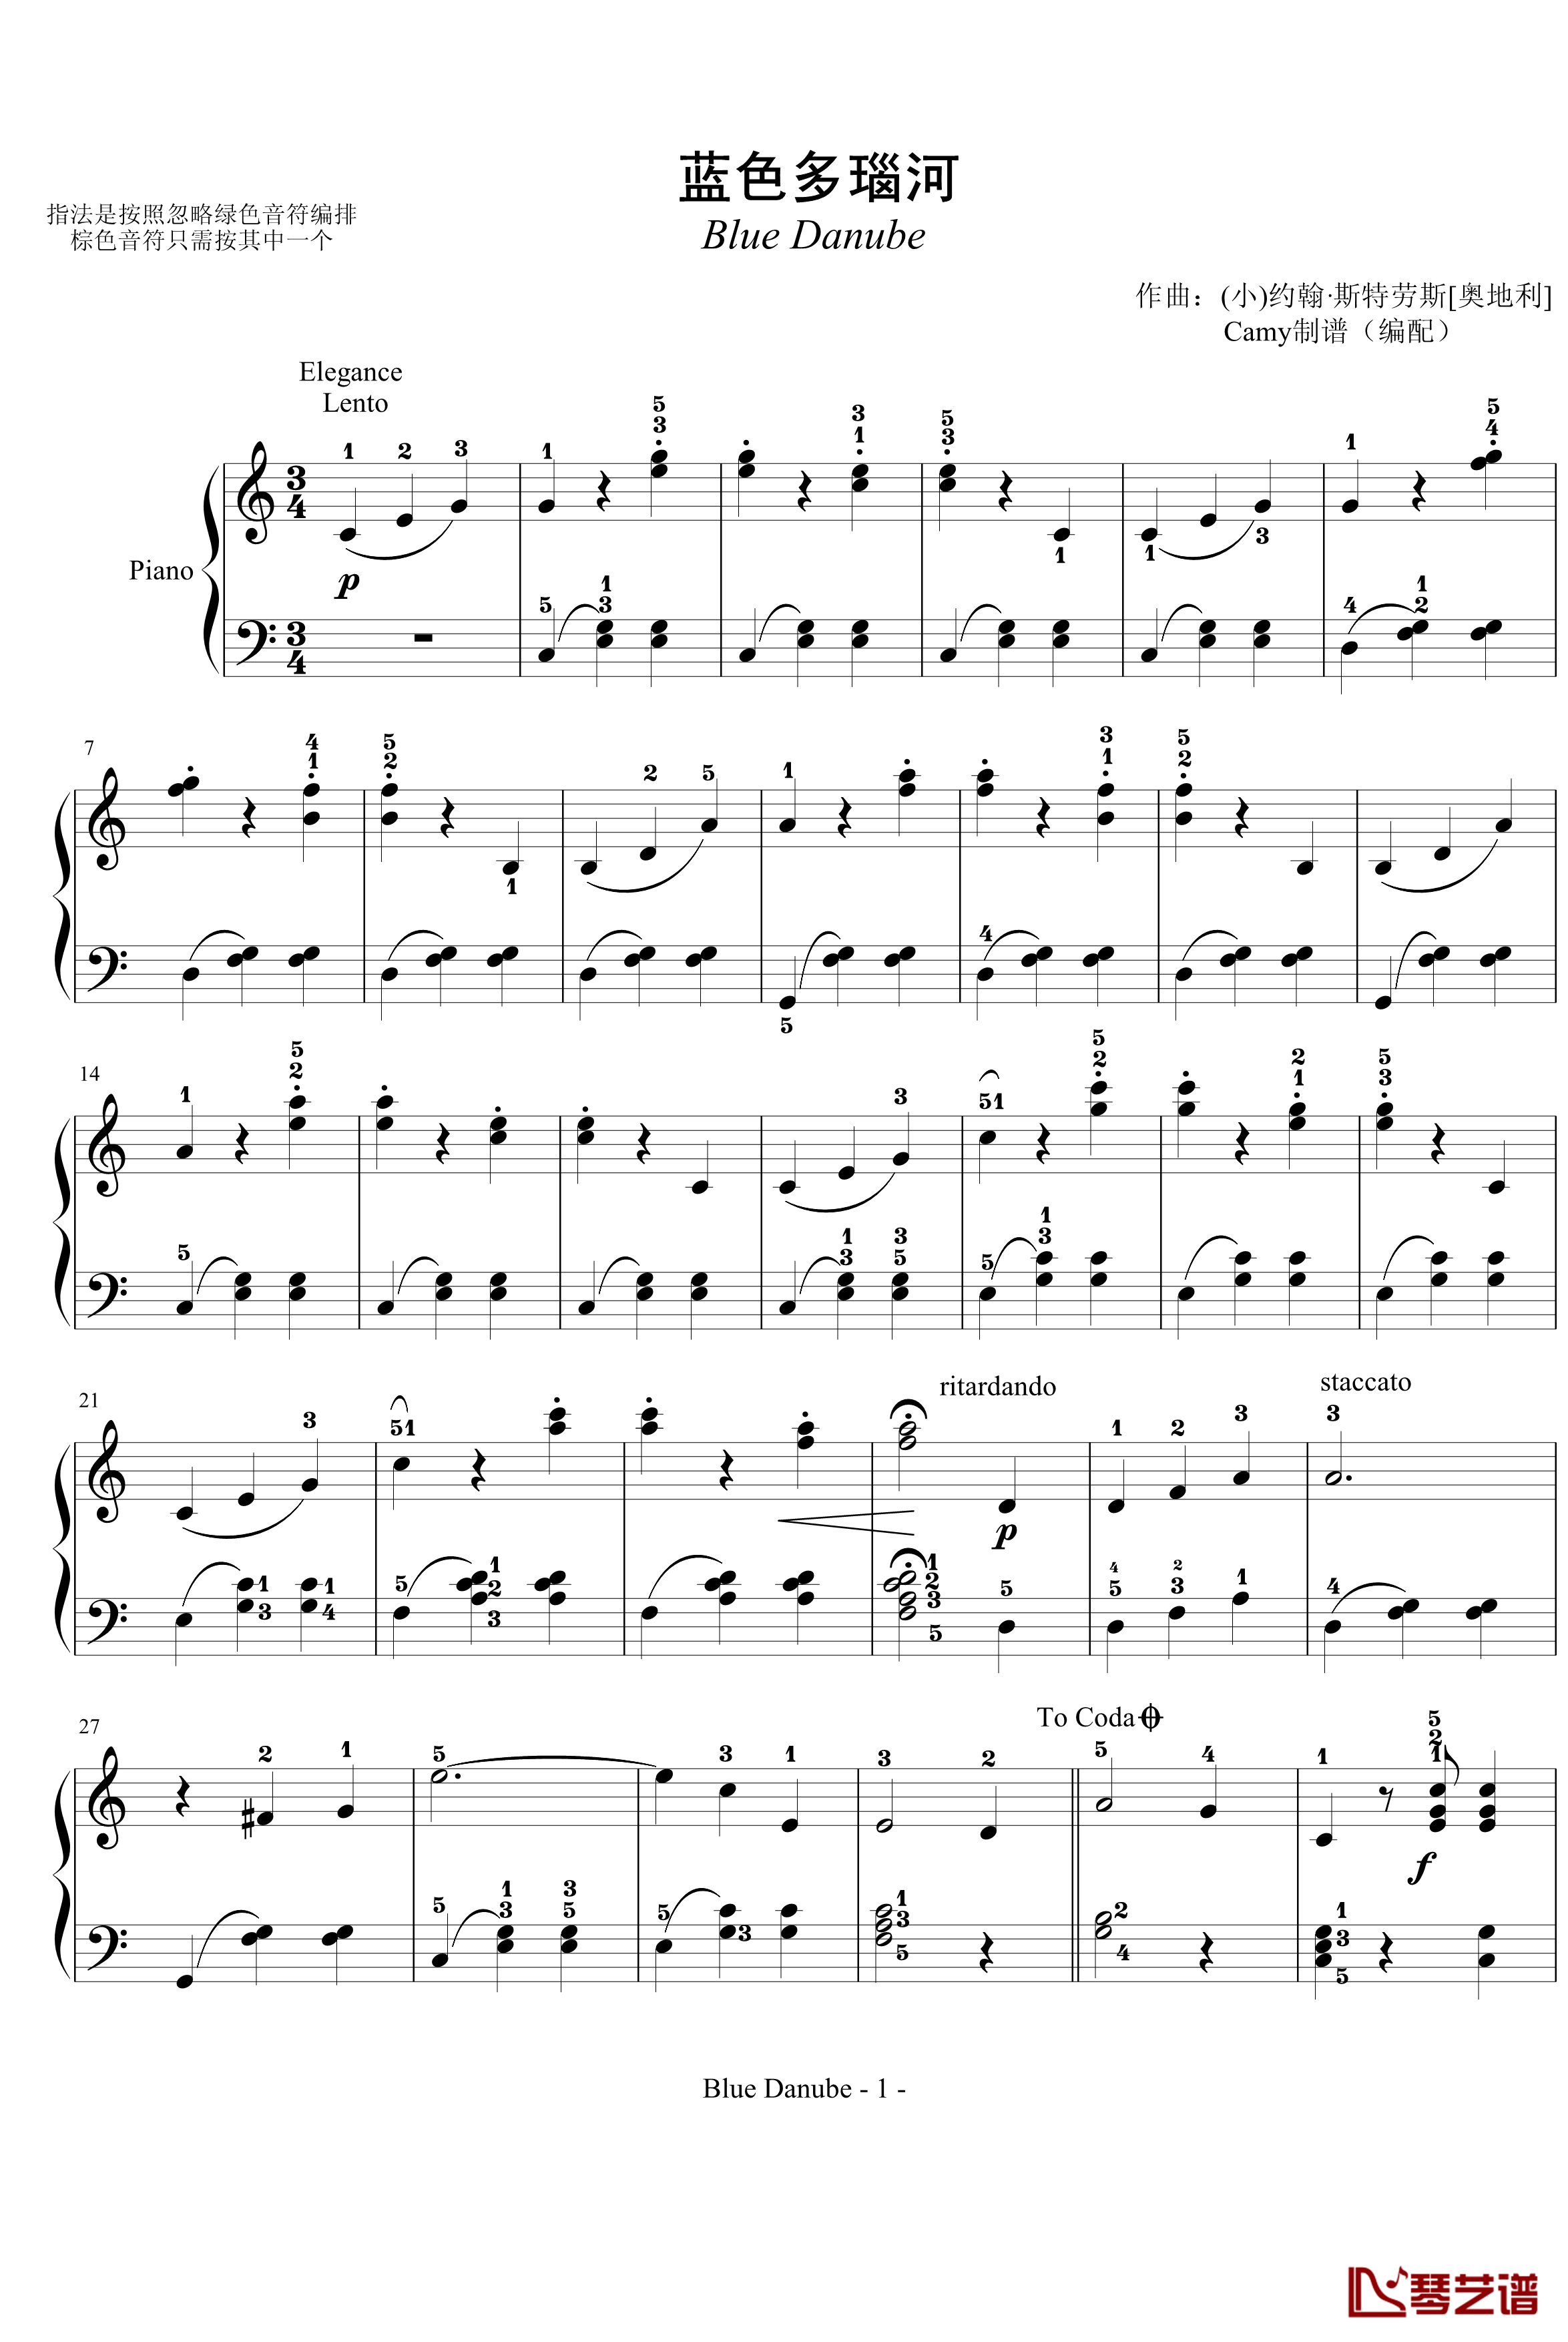 蓝色多瑙河钢琴谱-完整-带指法简化-约翰·斯特劳斯1